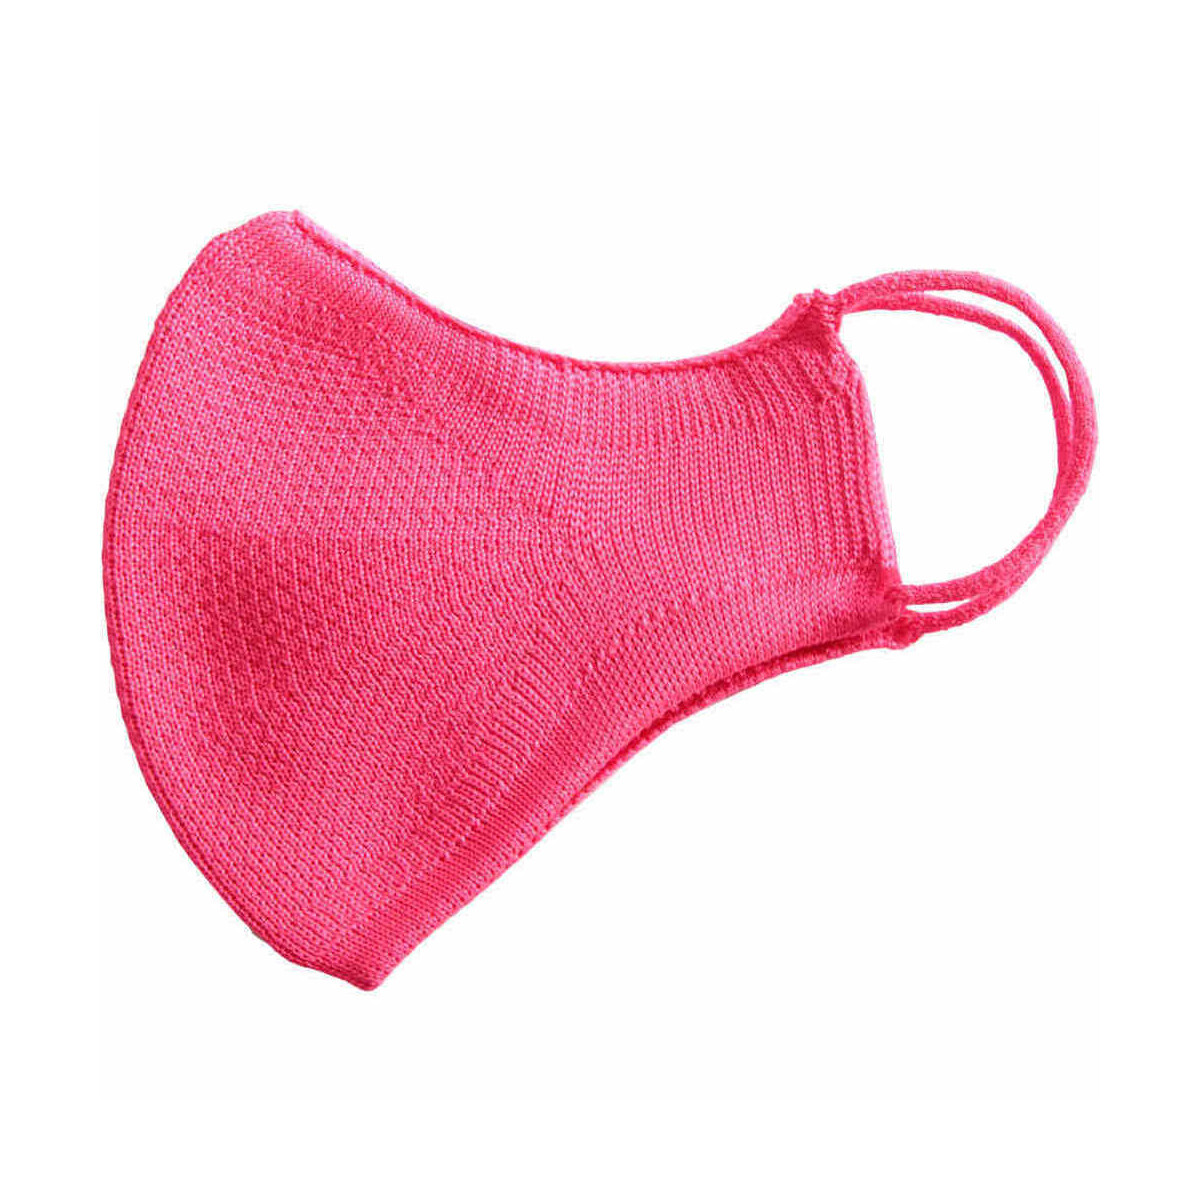 Accesorios textil Mascarilla Be Mask Pro Mask Infantil Diva Pink Rosa